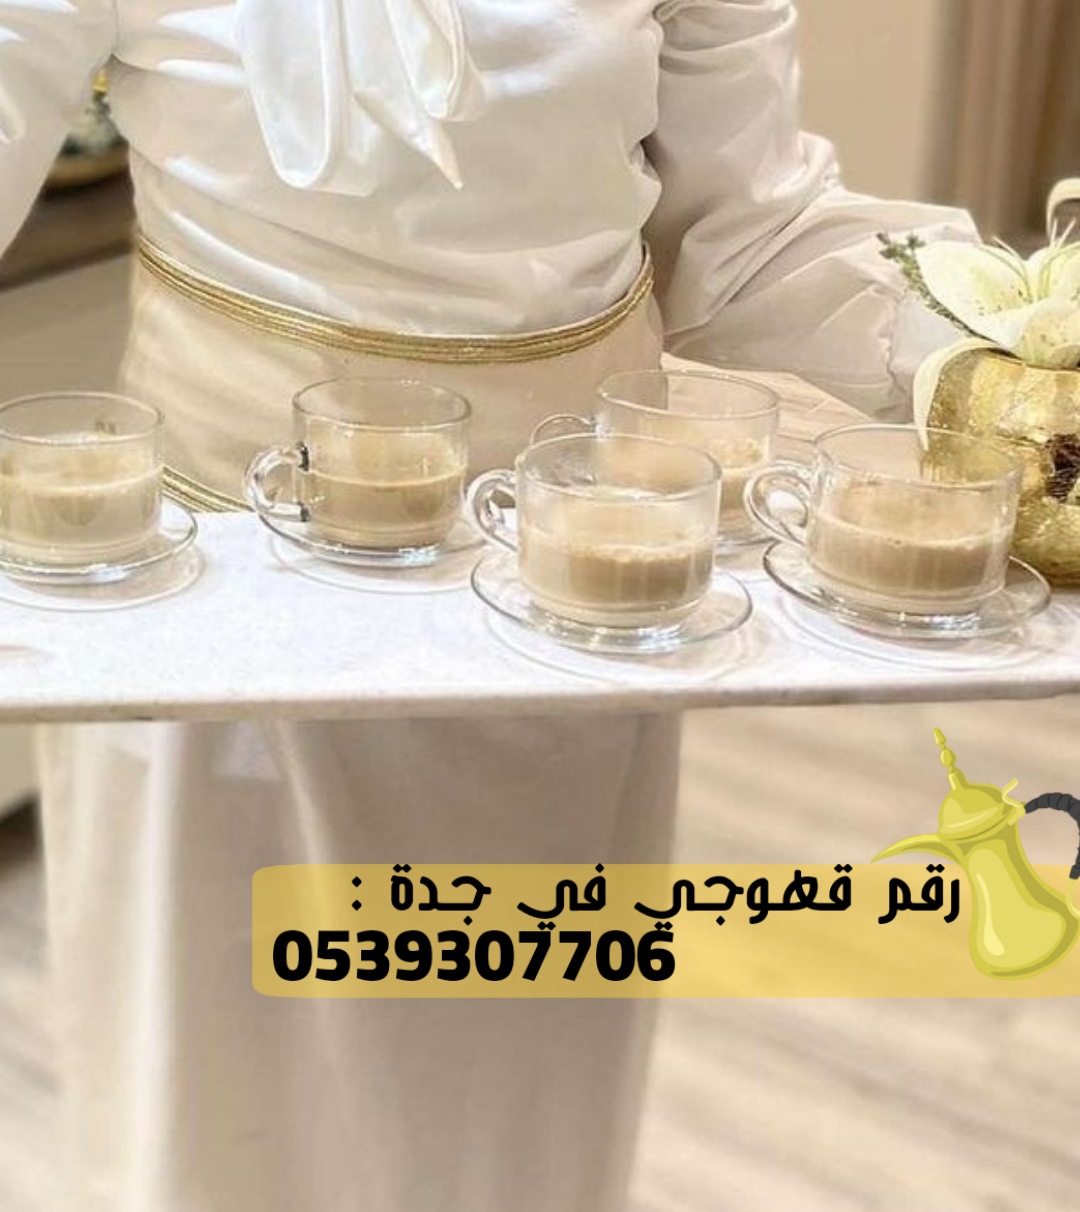 صبابات قهوة في جدة للضيافة, 0539307706